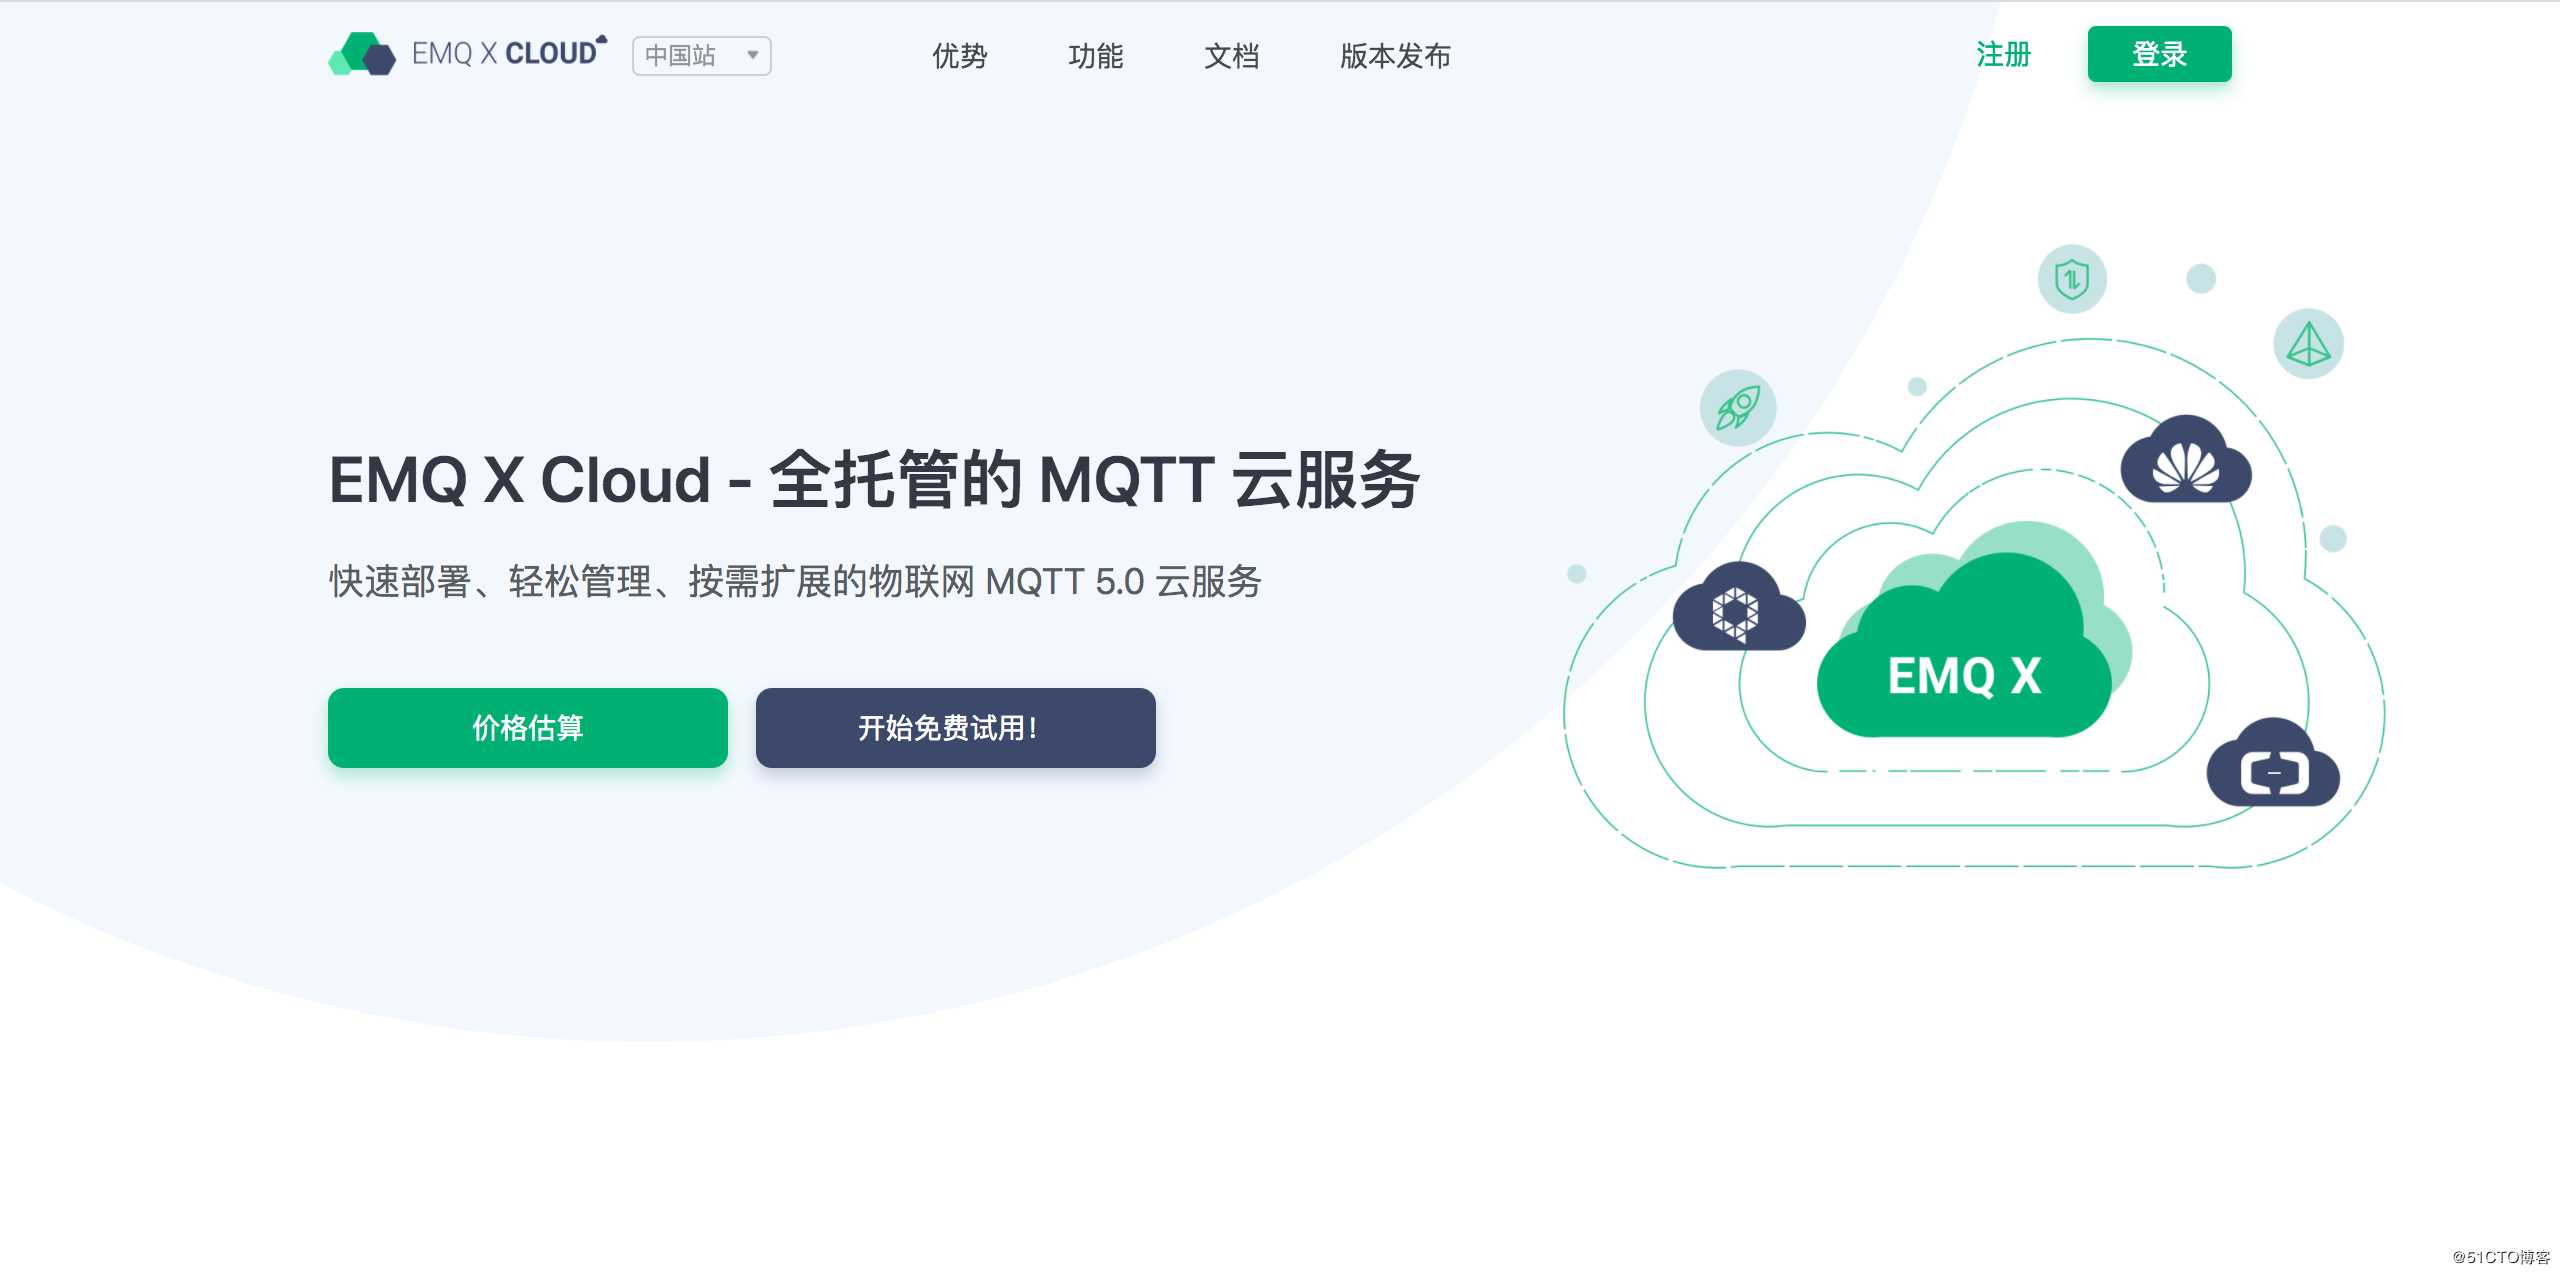 EMQ X Cloud - MQTT 5.0 公有云服务正式发布